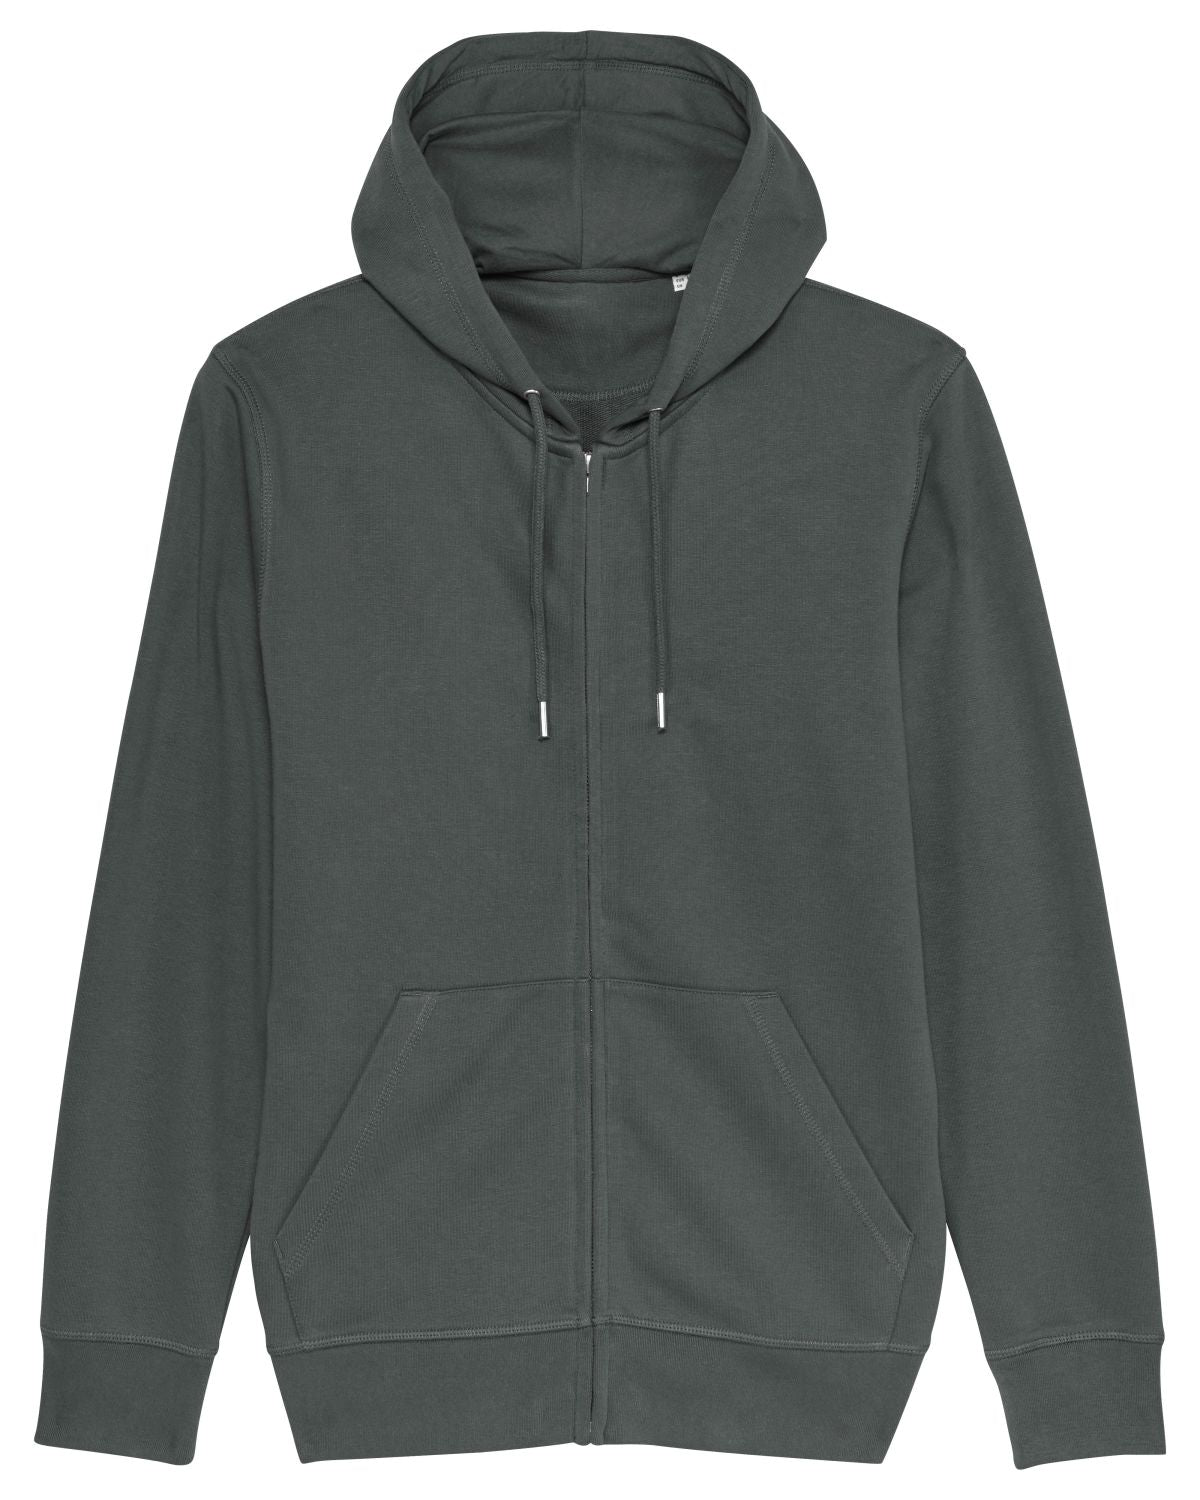 The Essential Unisex Zip-Thru Hoodie Sweatshirt